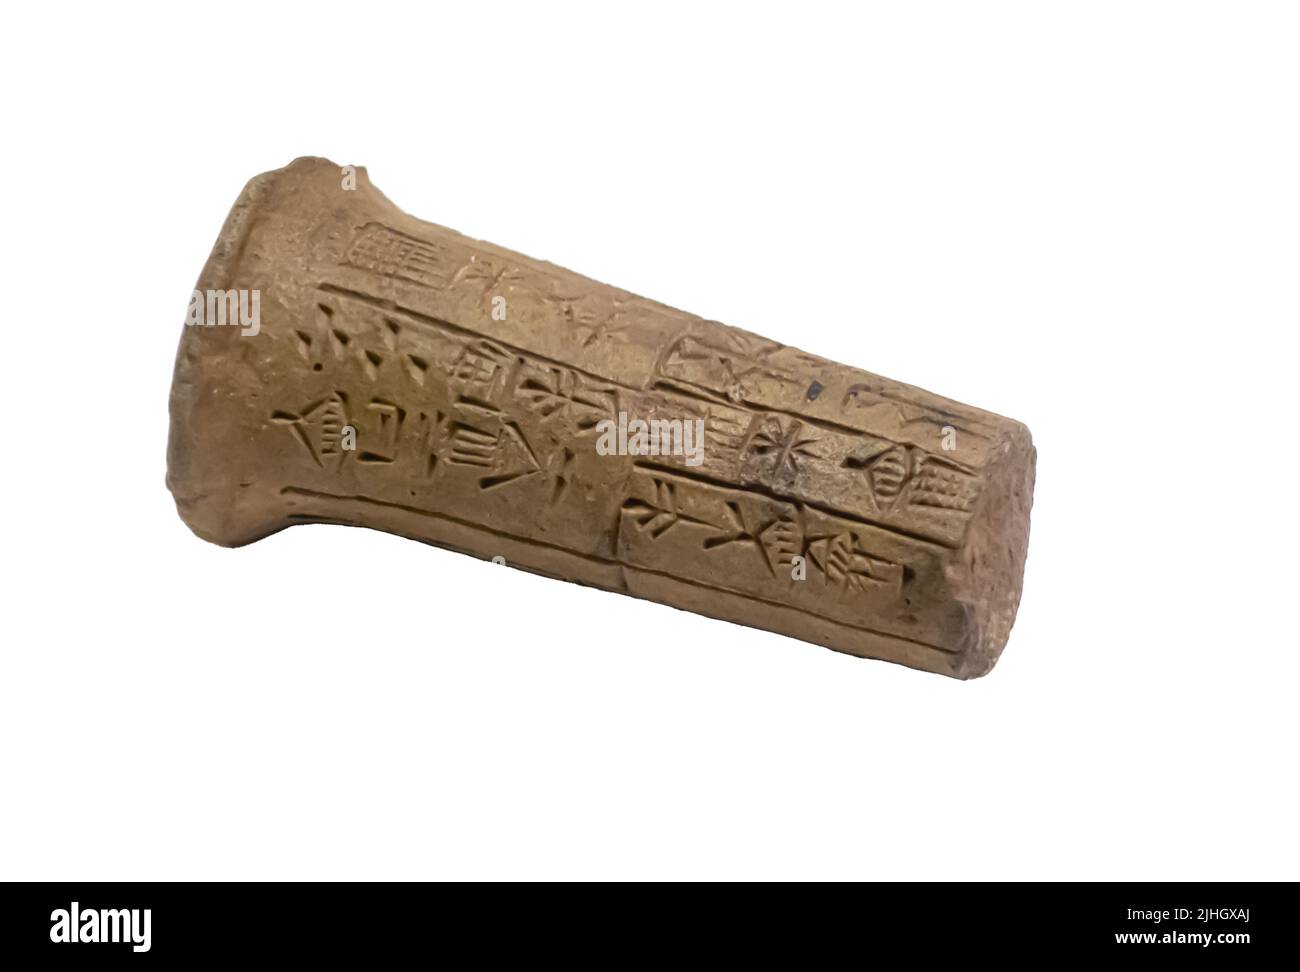 Tonkegel von Enanatum I mit einer Gebäudesinschrift, die dem Bau des Tempels der Göttin Inanna in Lagash gewidmet ist. Preargonic-Periode. 2700-2350 V. CHR. Stockfoto